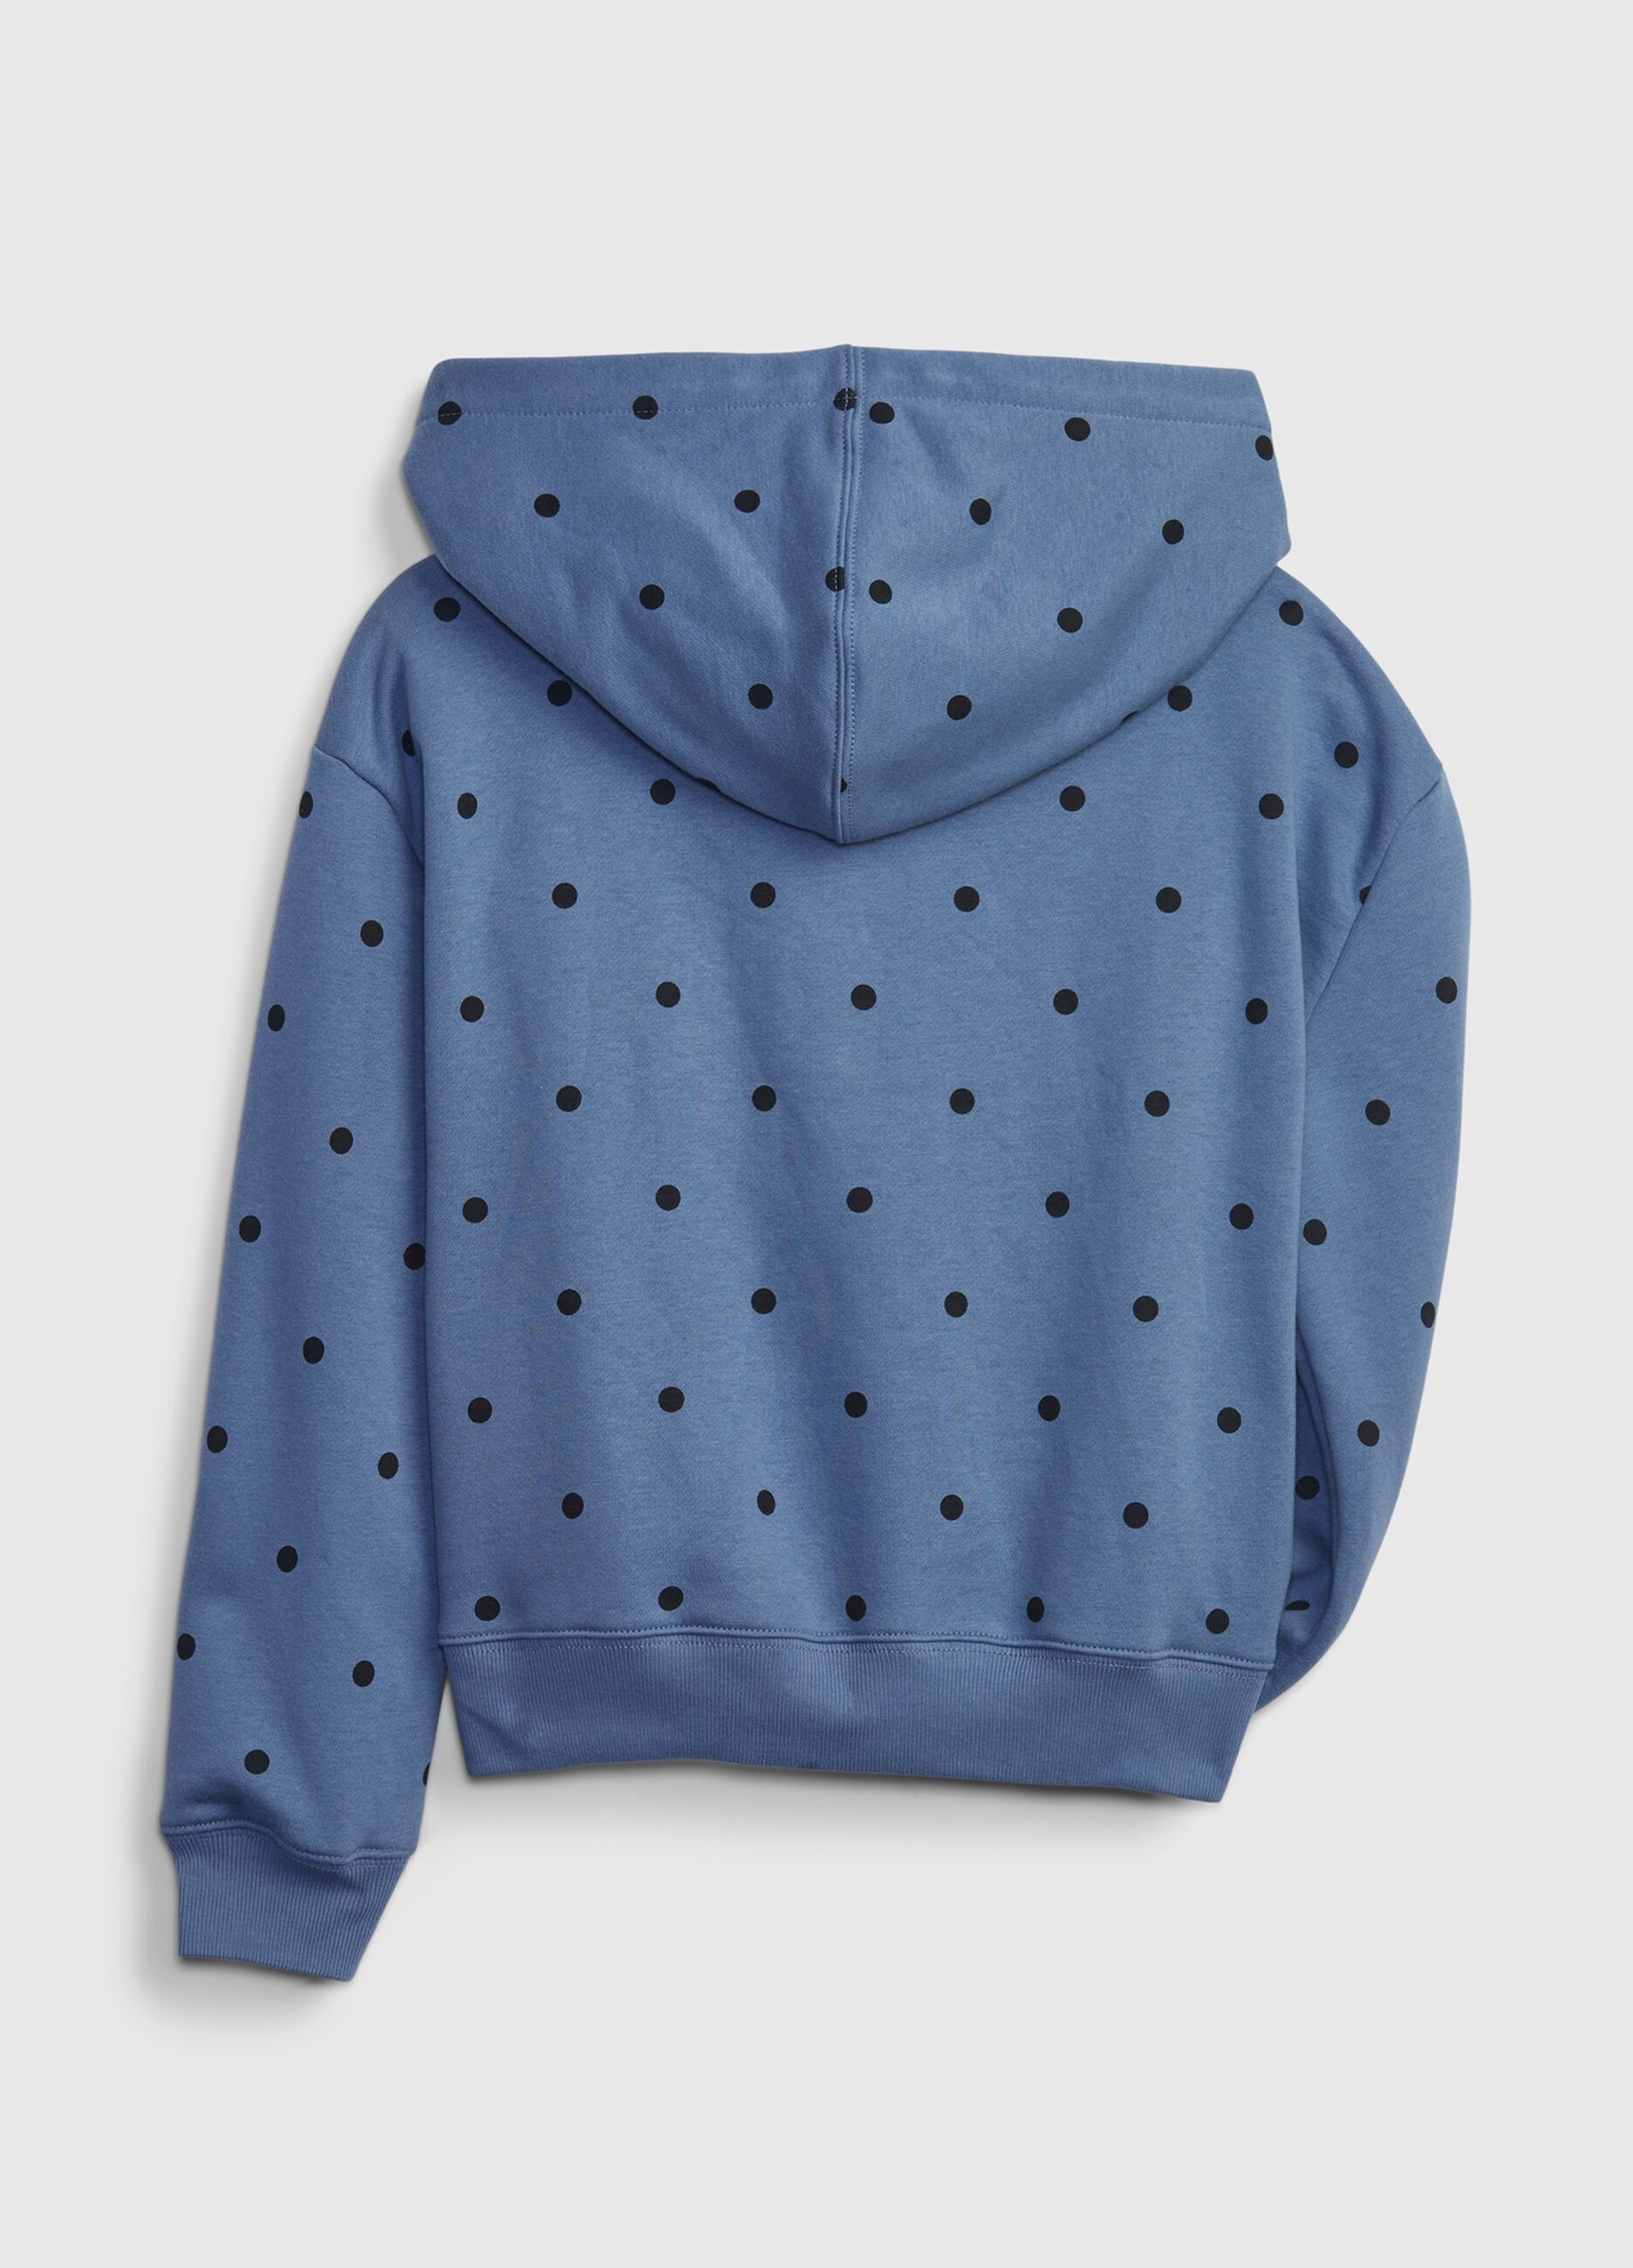 Full-zip fleece sweatshirt with logo and polka dots